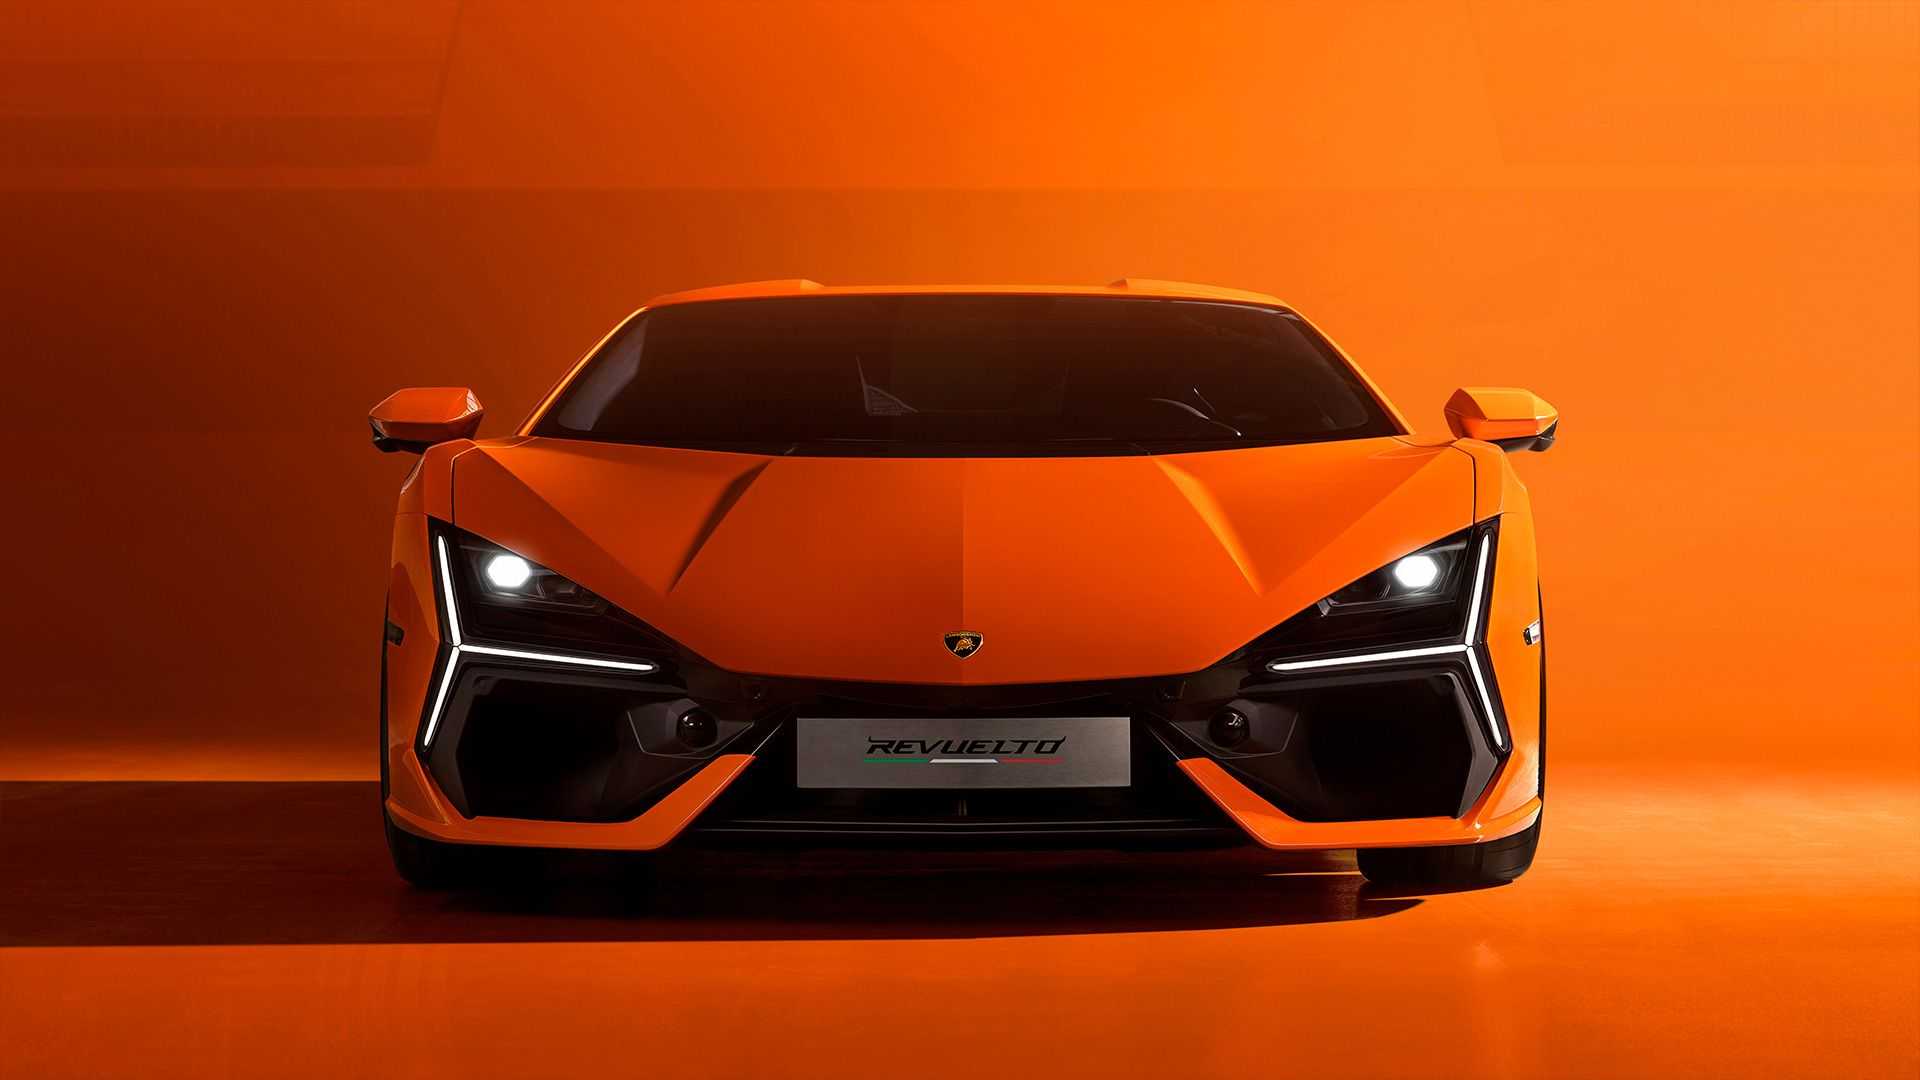 Lamborghini Revuelto chính thức chào sân: Hậu duệ Aventador, công suất trên 1.000 mã lực - Ảnh 8.